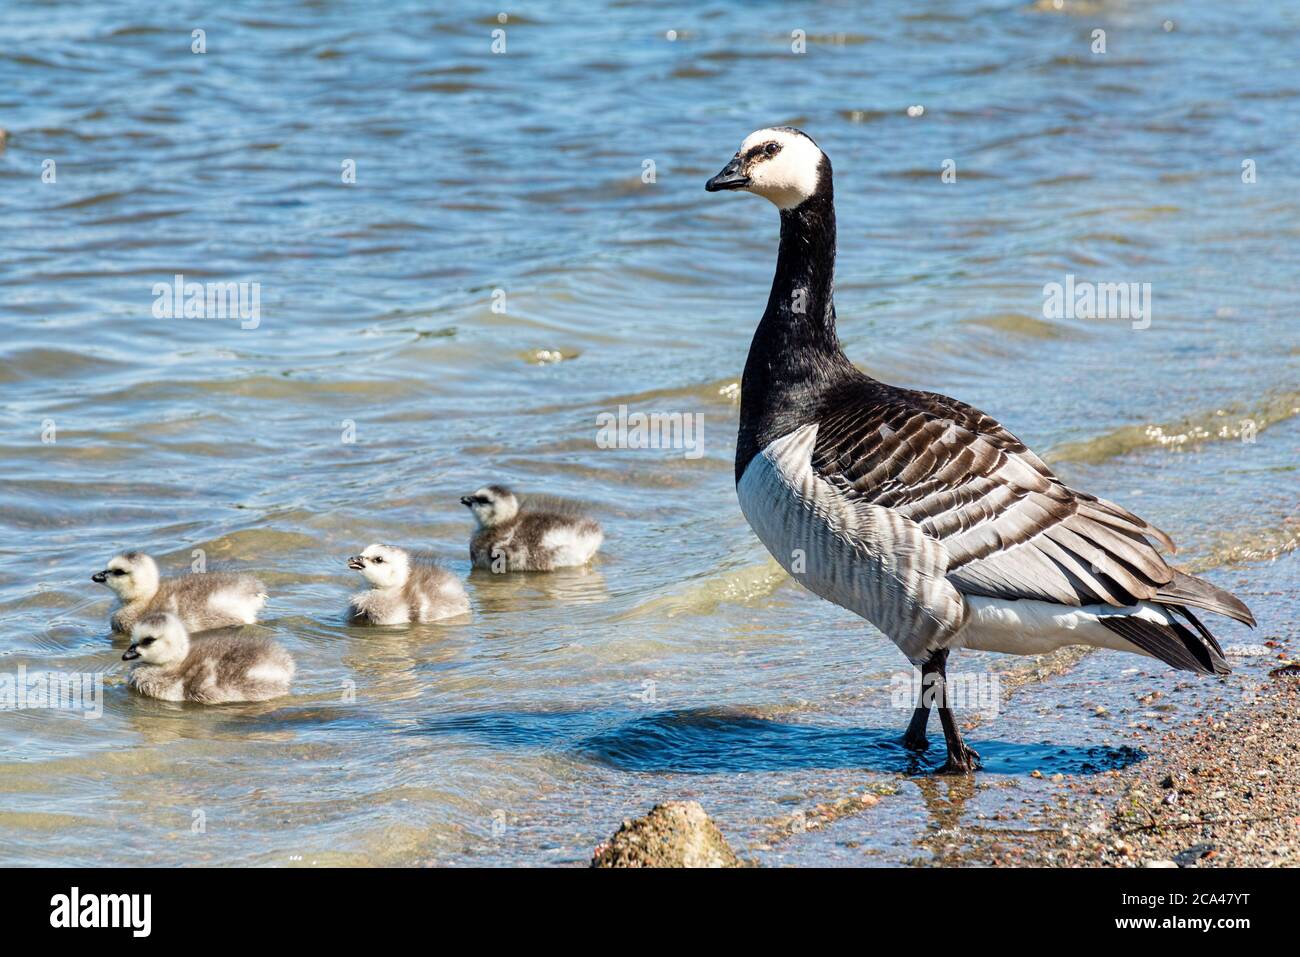 The barnacle goose (Branta leucopsis) belongs to the genus Branta of black geese. Stock Photo